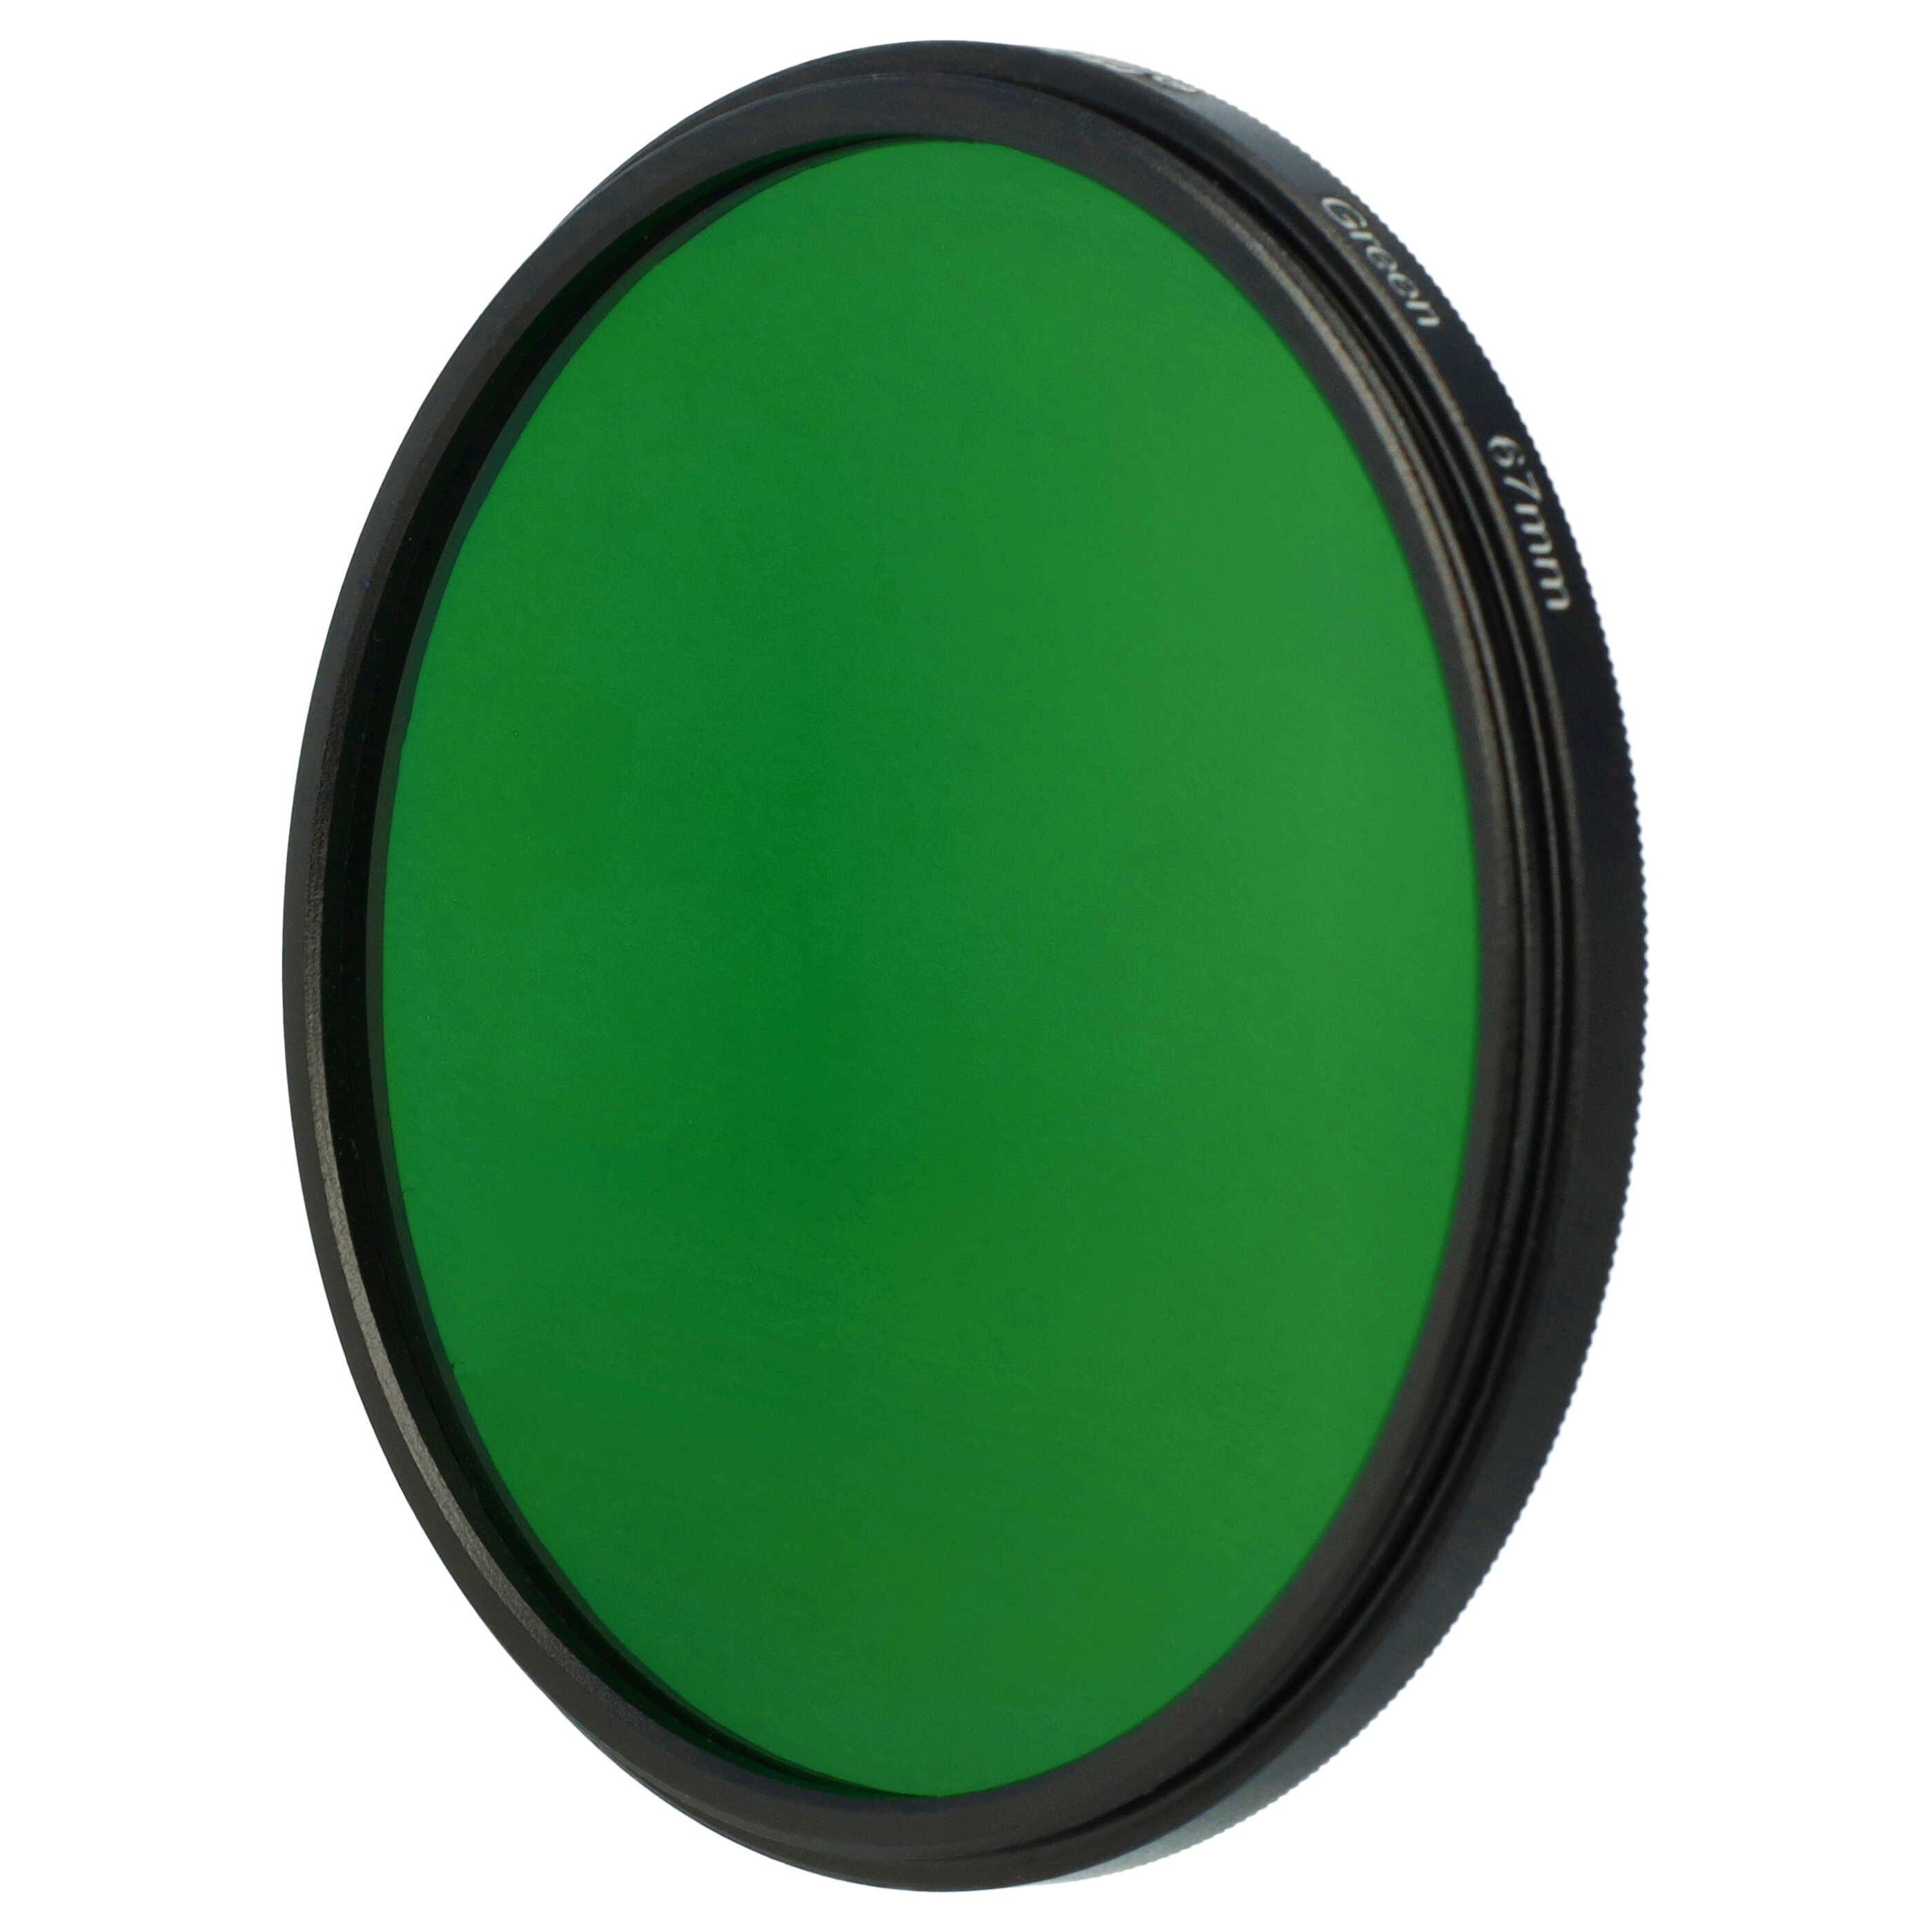 Filtro de color para objetivo de cámara con rosca de filtro de 67 mm - Filtro verde